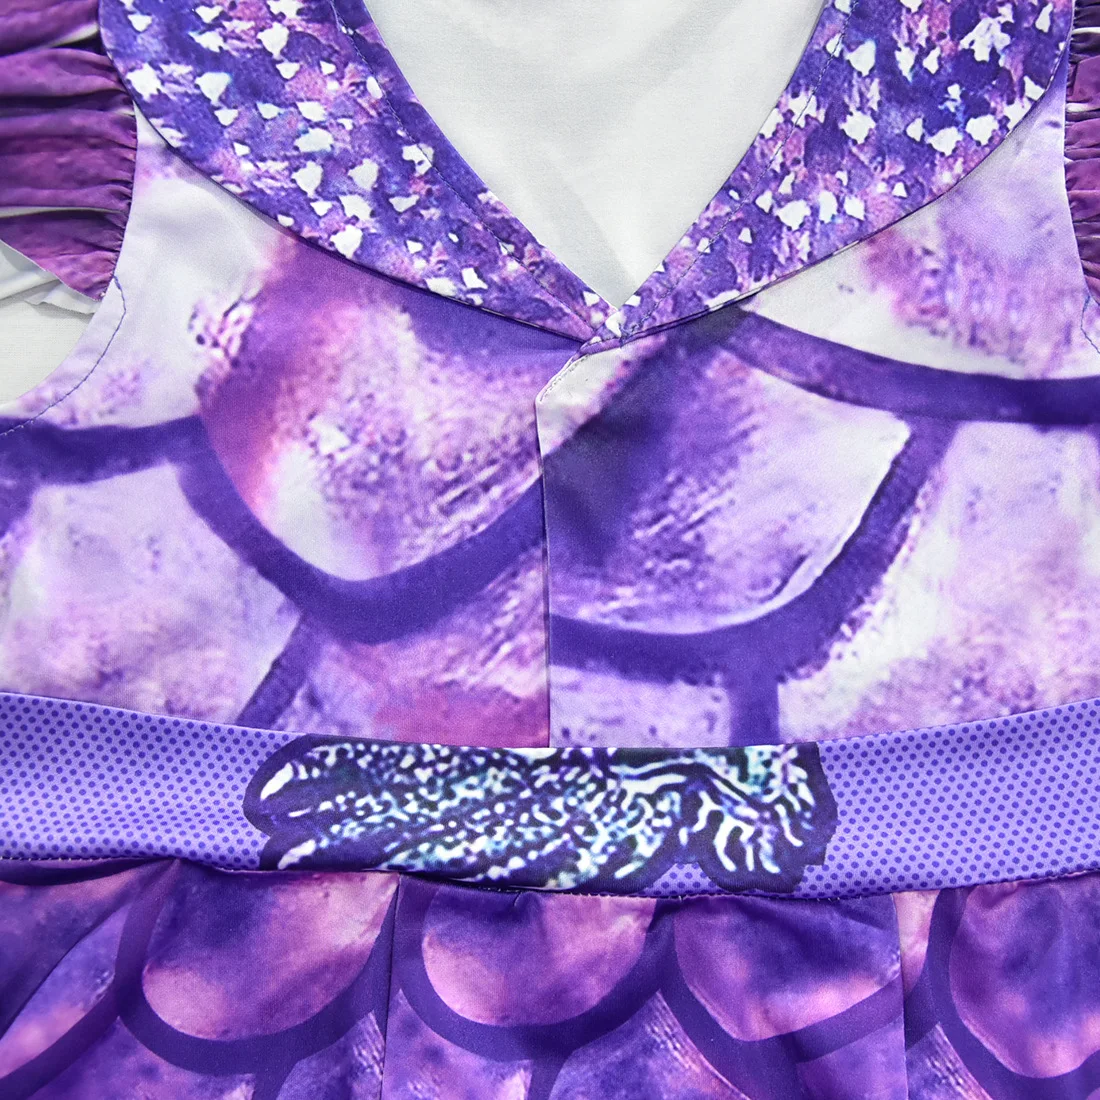 Фильм потомки 3 ТЗА костюм для косплея фиолетового цвета юбка платье костюм на Хэллоуин платье принцессы